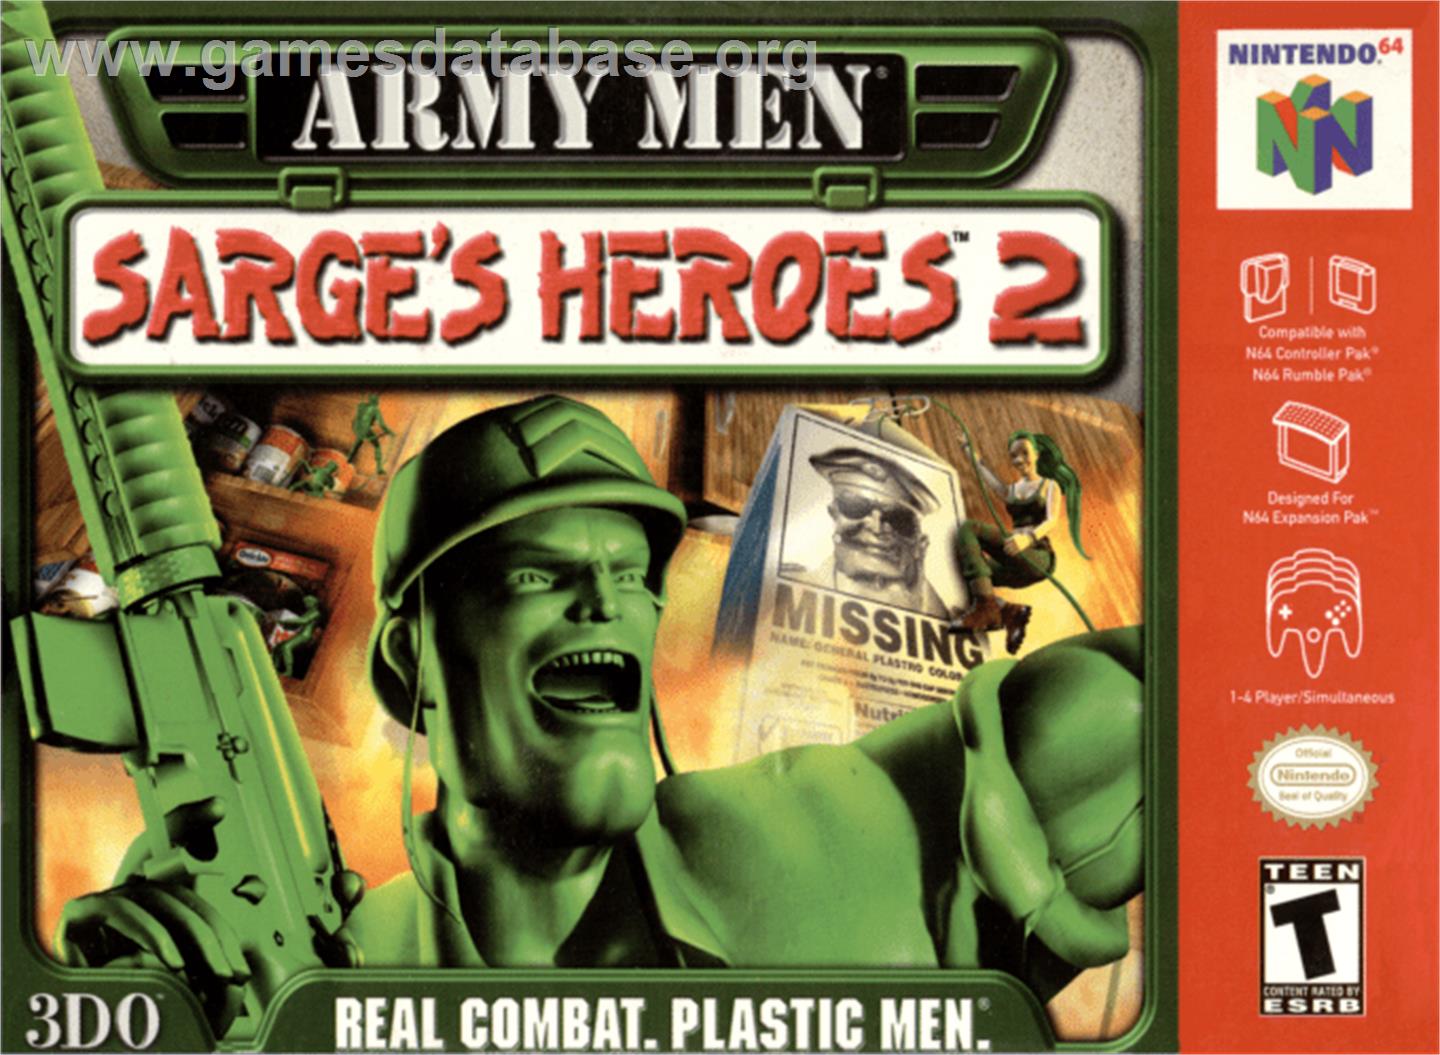 Army Men: Sarge's Heroes 2 - Nintendo N64 - Artwork - Box